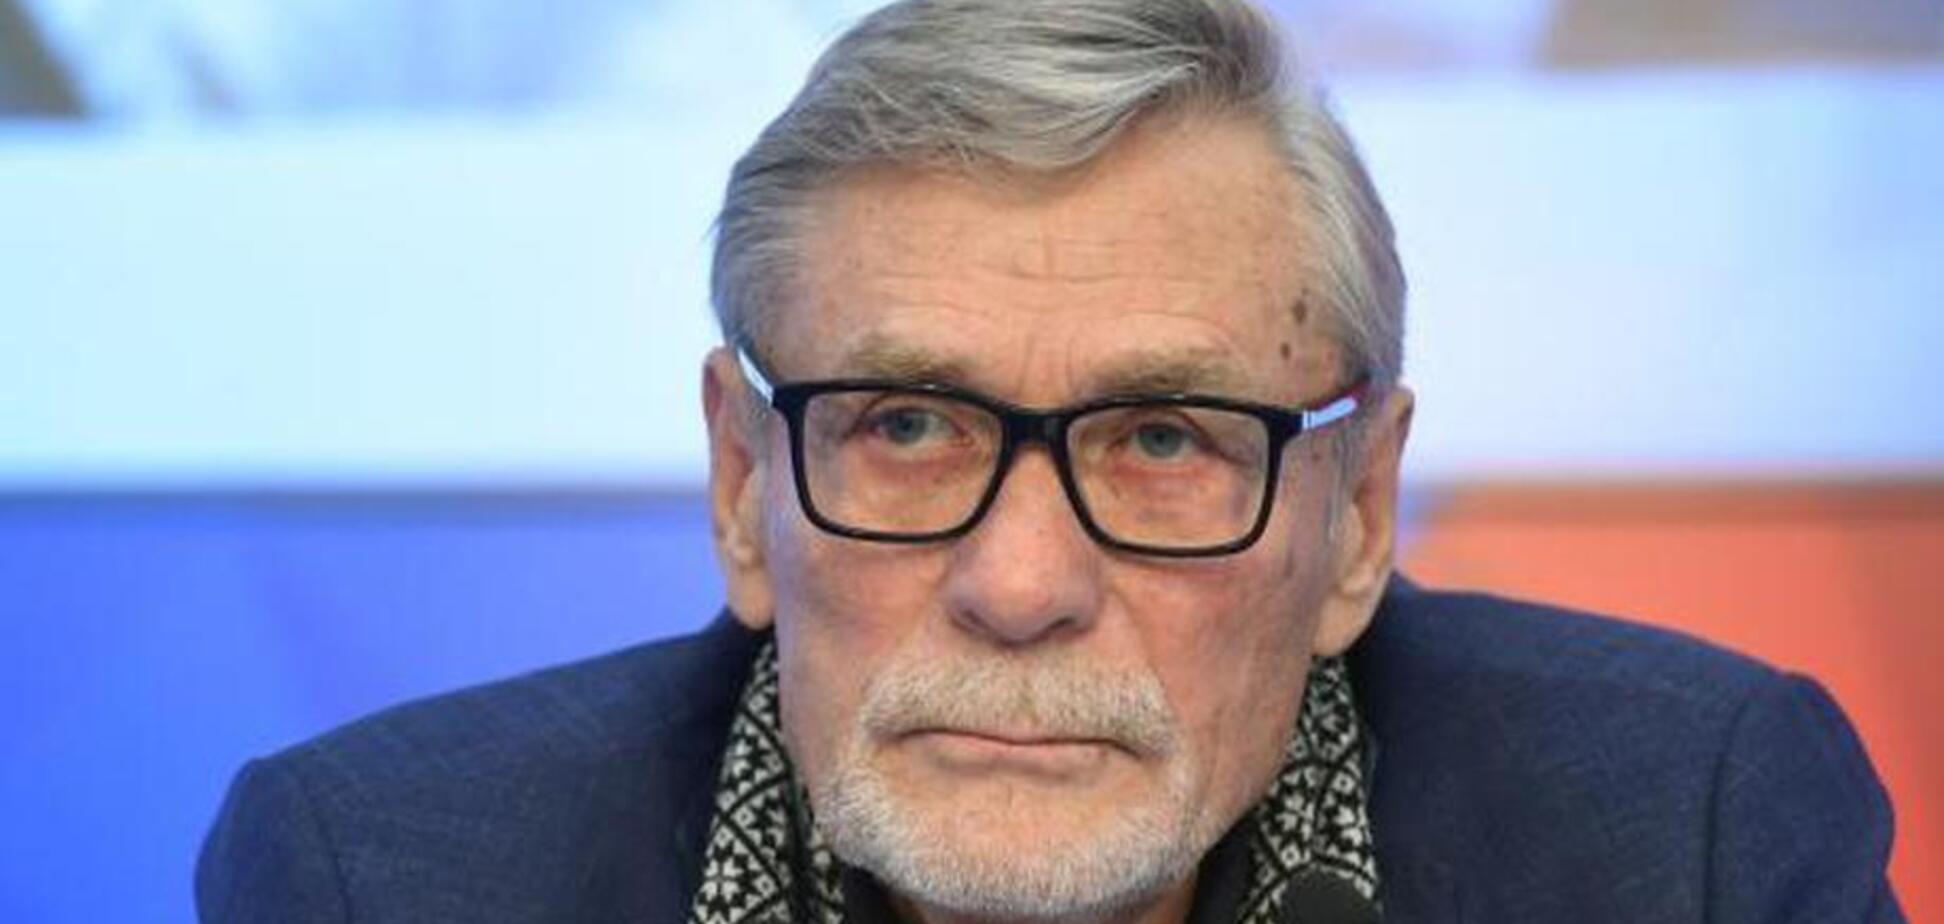 РосСМИ 'похоронили' знаменитого российского актера: поднялся скандал